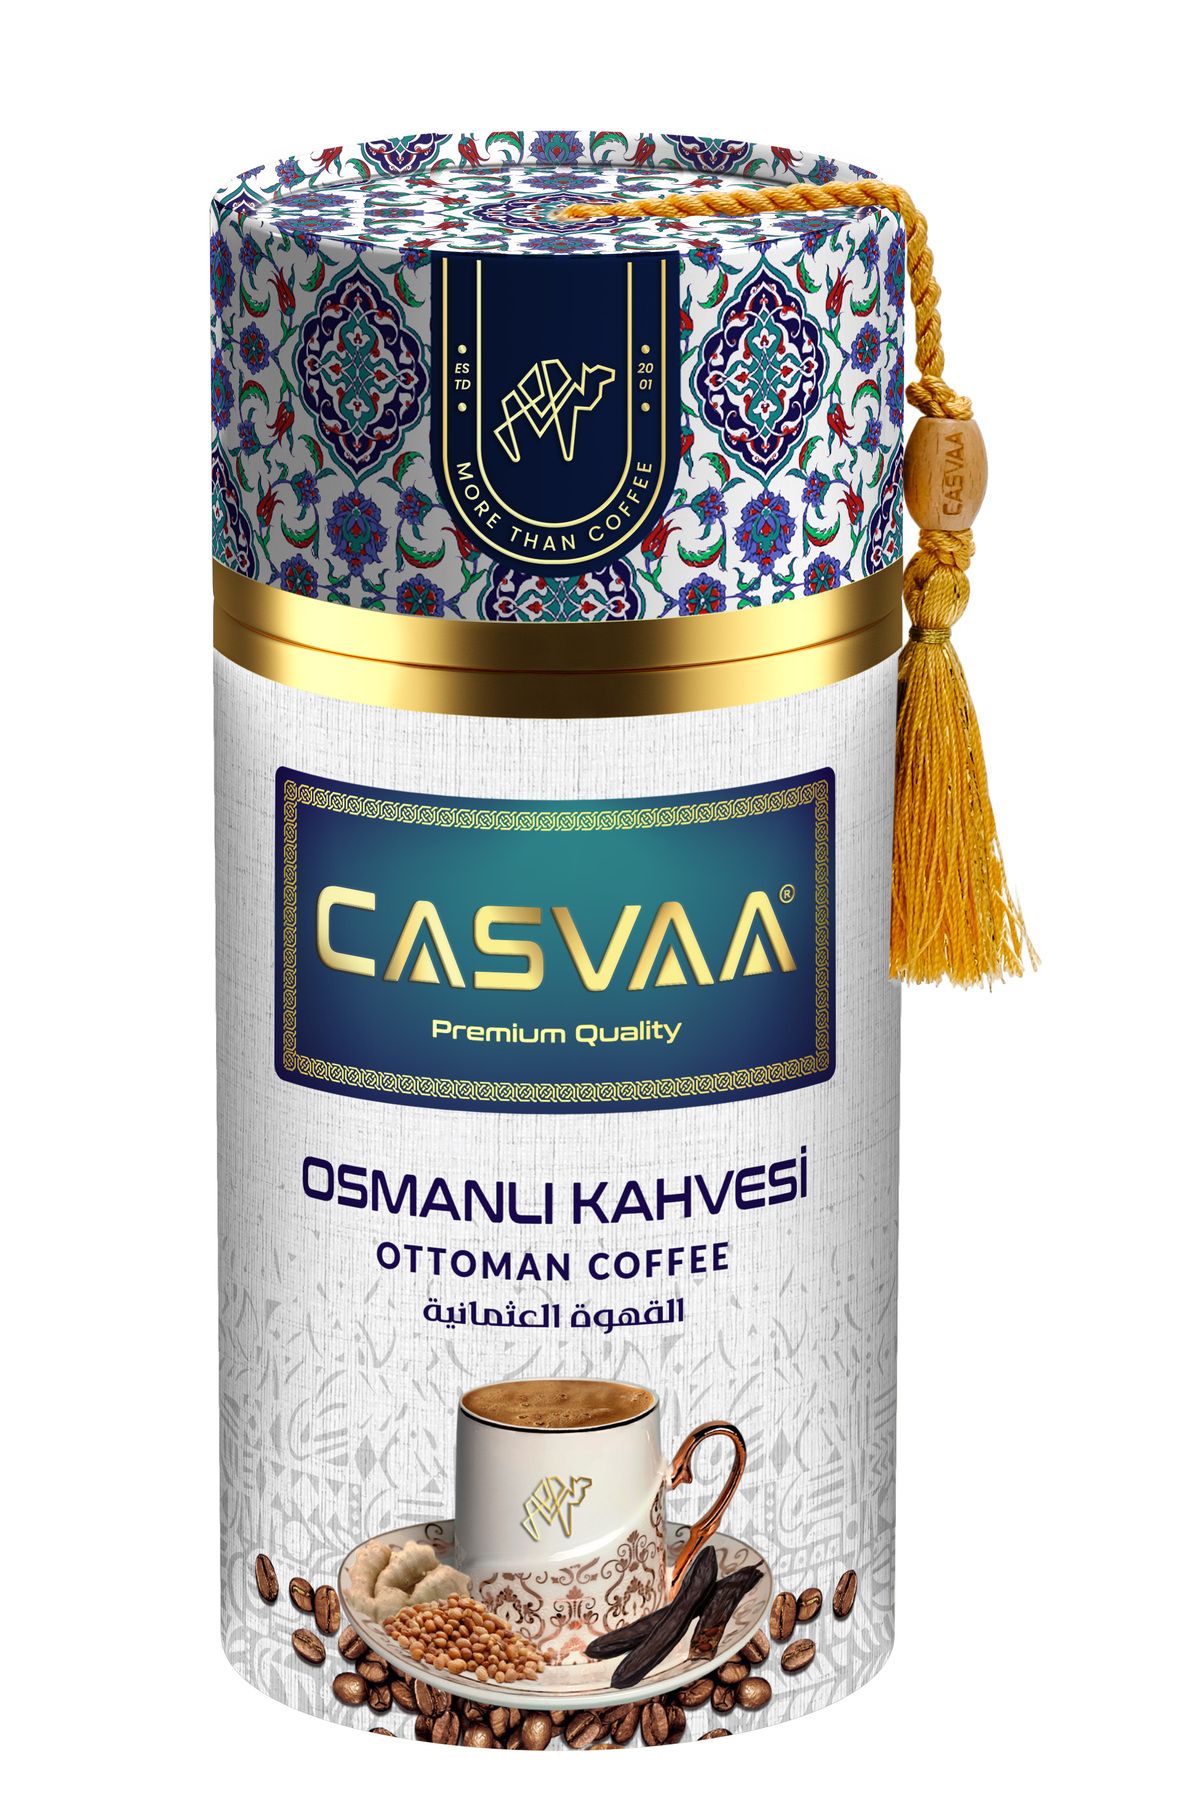 CASVAA COFFE Şehzade Osmanlı Kahvesi 250g